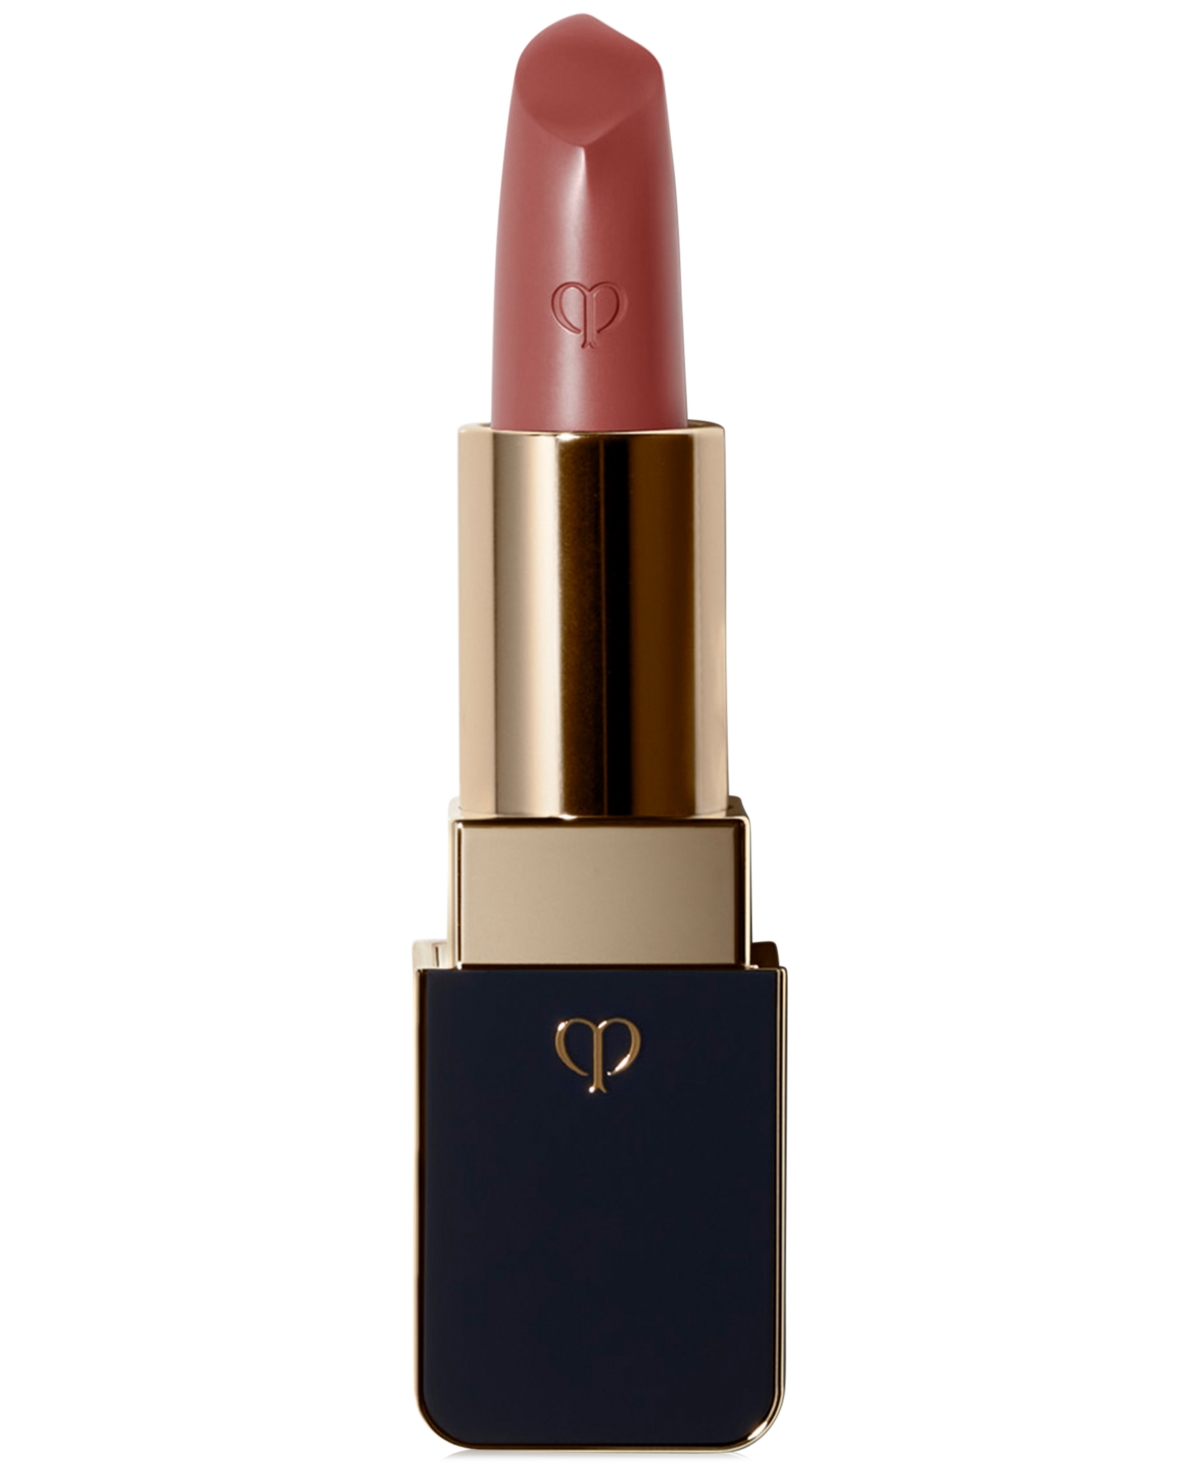 Clé De Peau Beauté Cle De Peau Beaute Lipstick In - Snapdragon